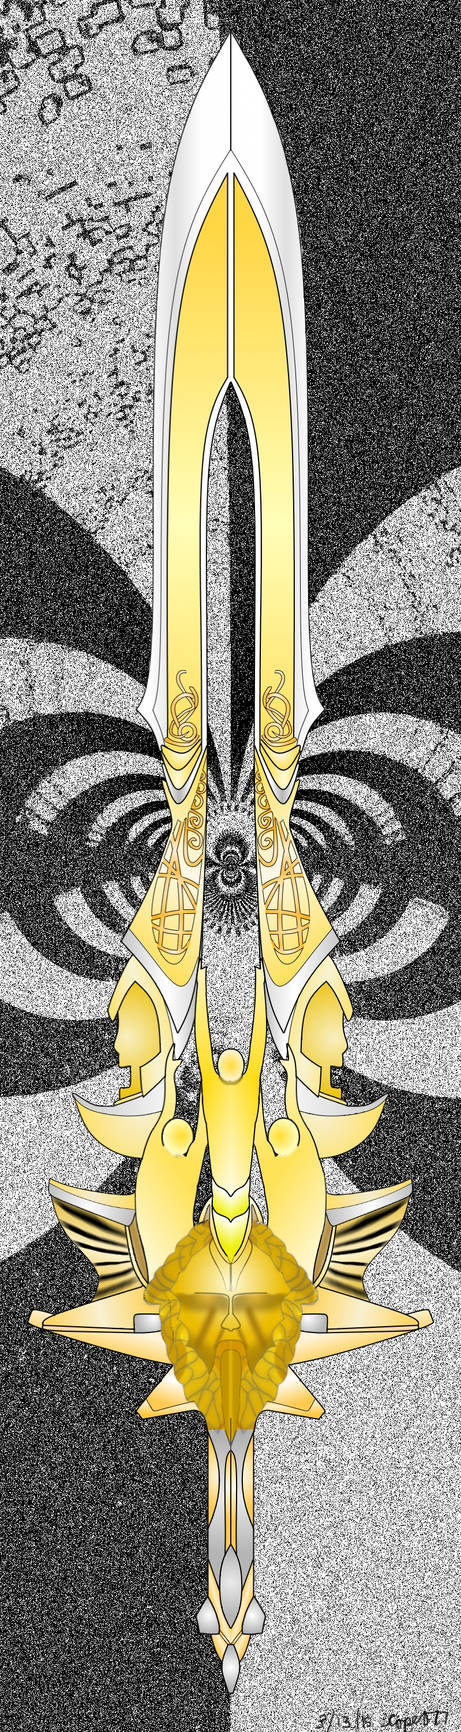 Blade of Olympus Line Art V.1 by Debochira on DeviantArt